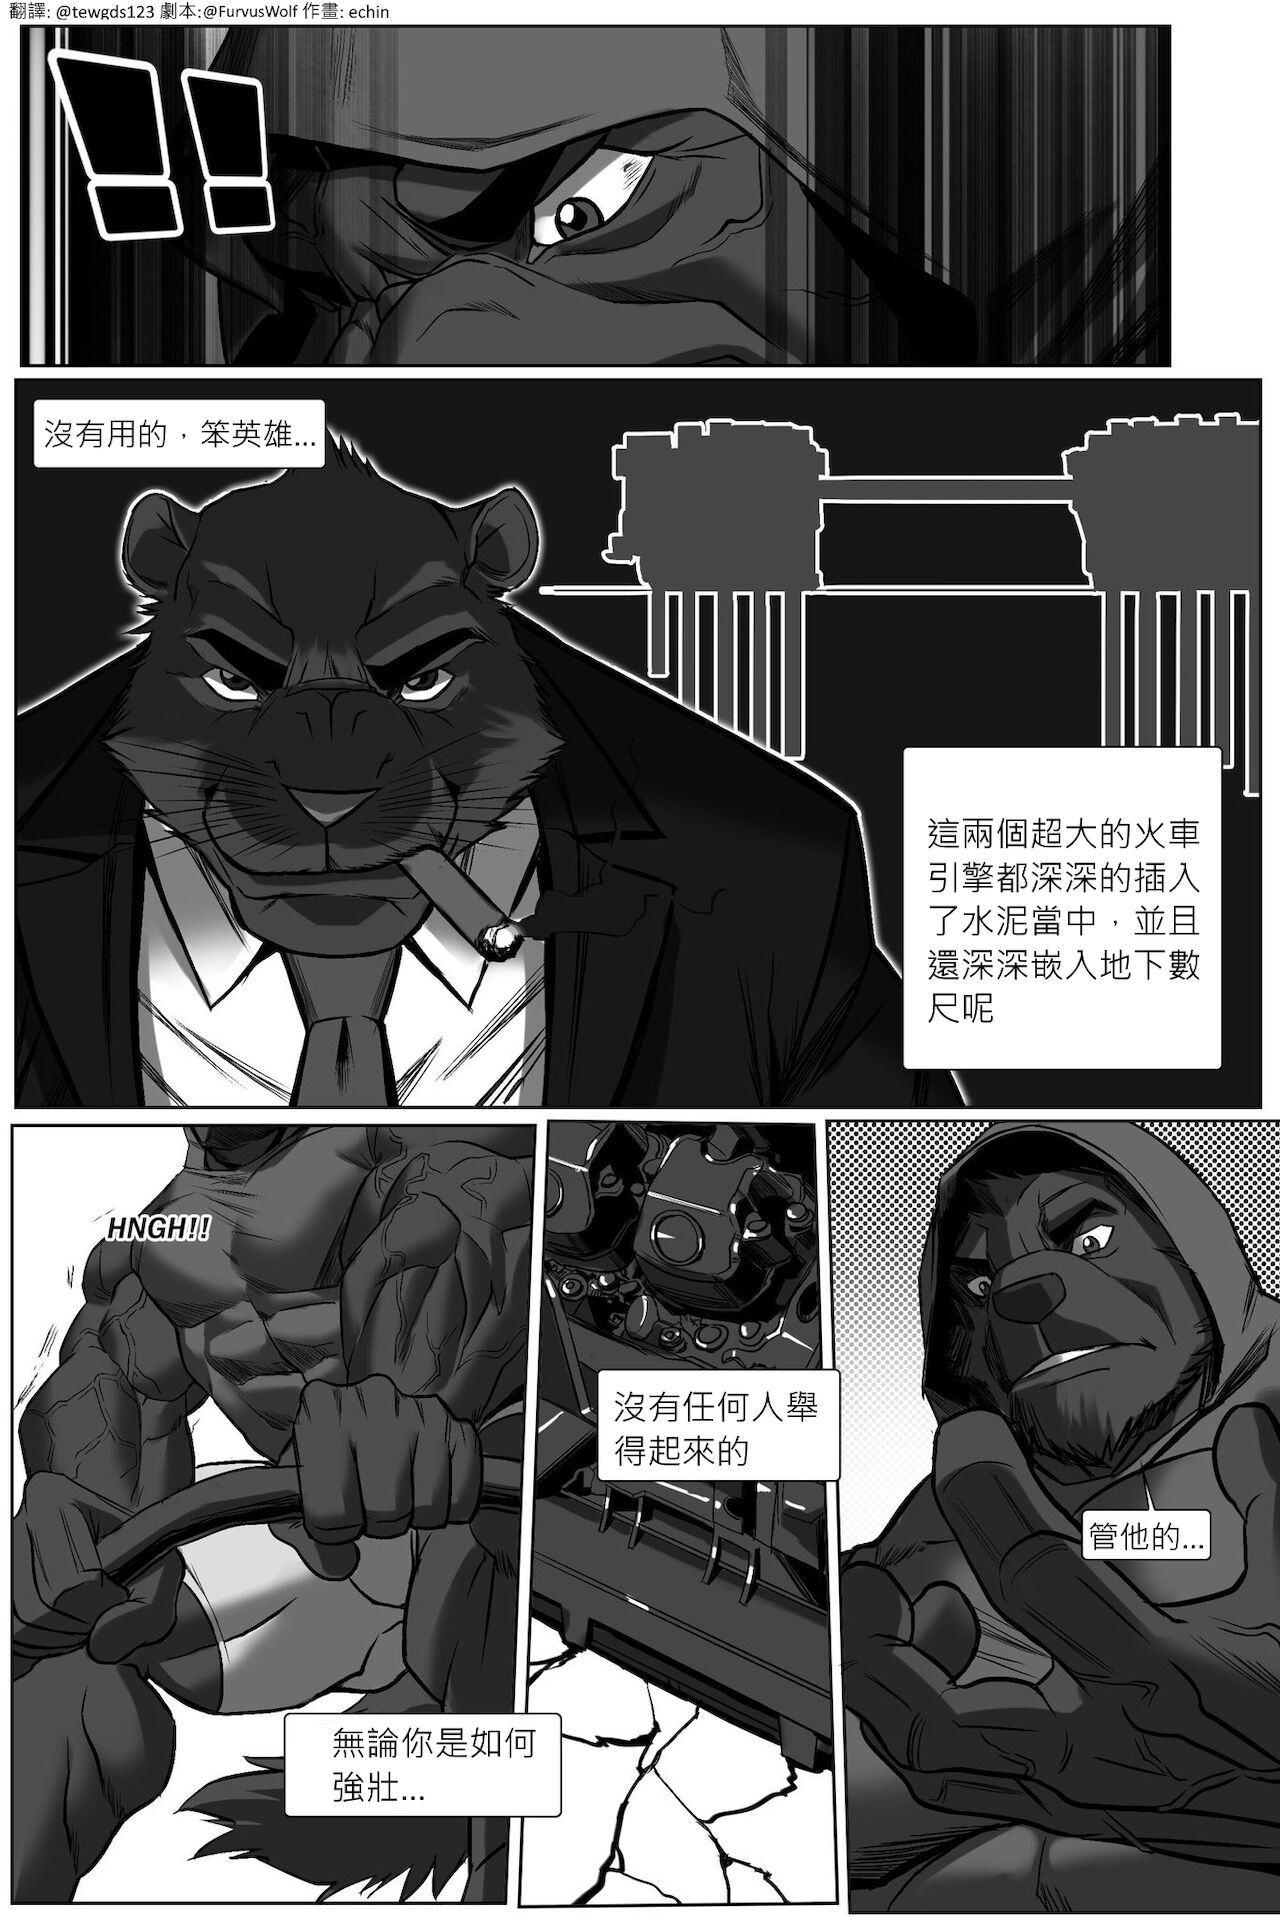 [echin][The Impossible Hulk Wolf][chinese] 8